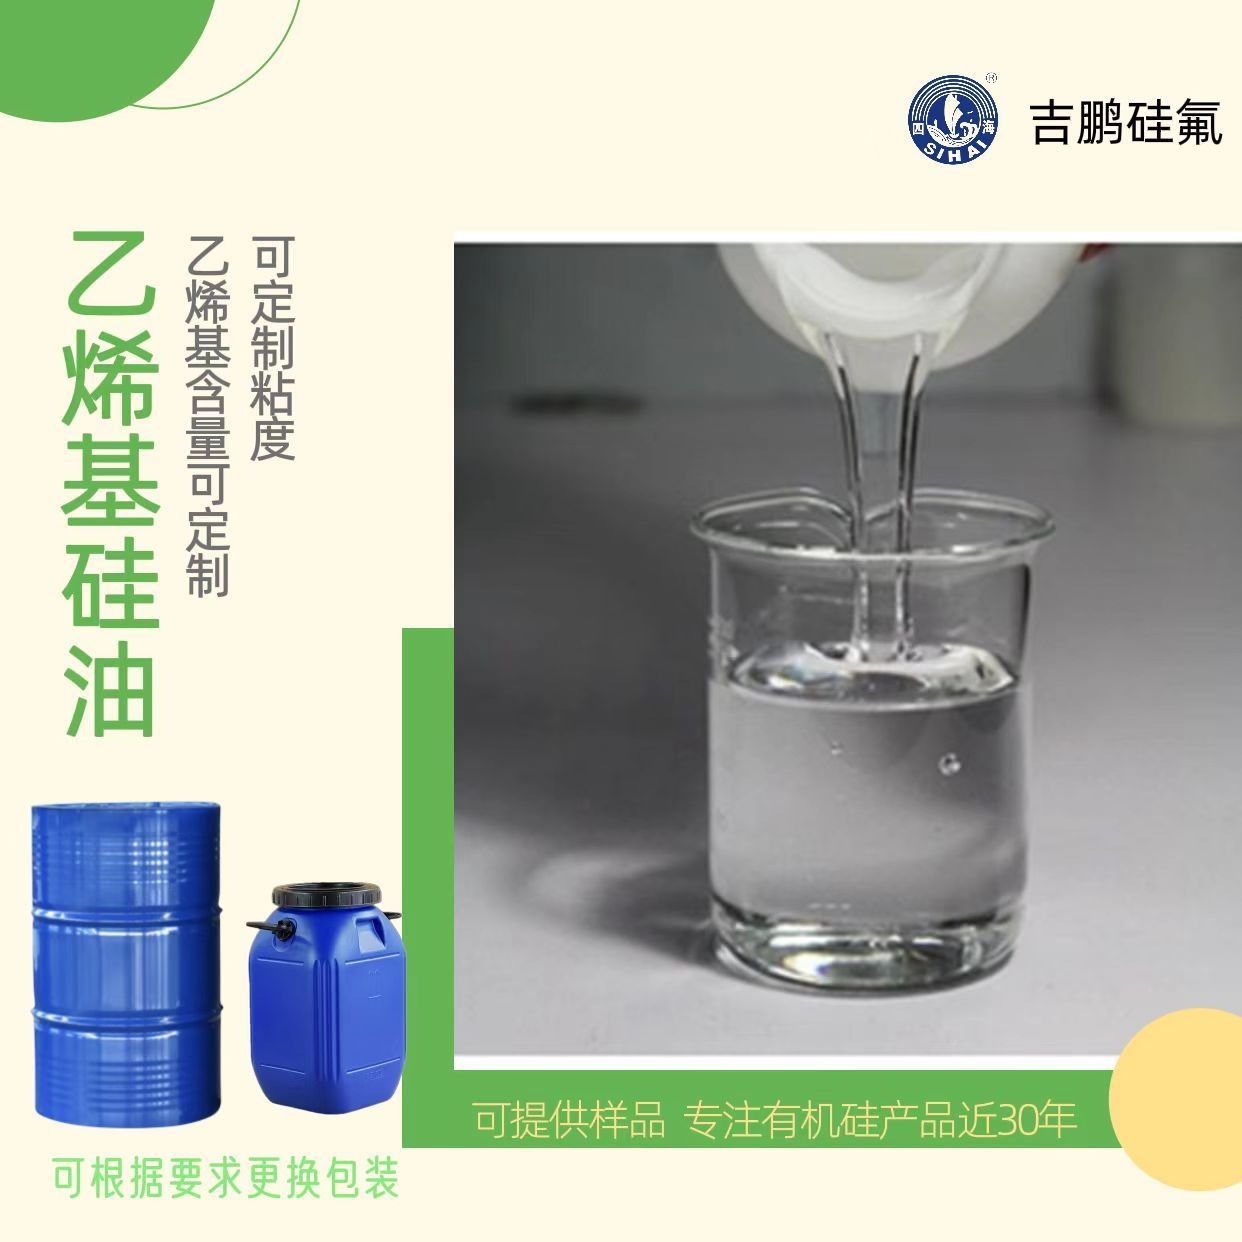 深圳吉鹏 新料 乙烯基硅油 端乙烯基硅油 塑料添加剂 有机硅凝胶原料